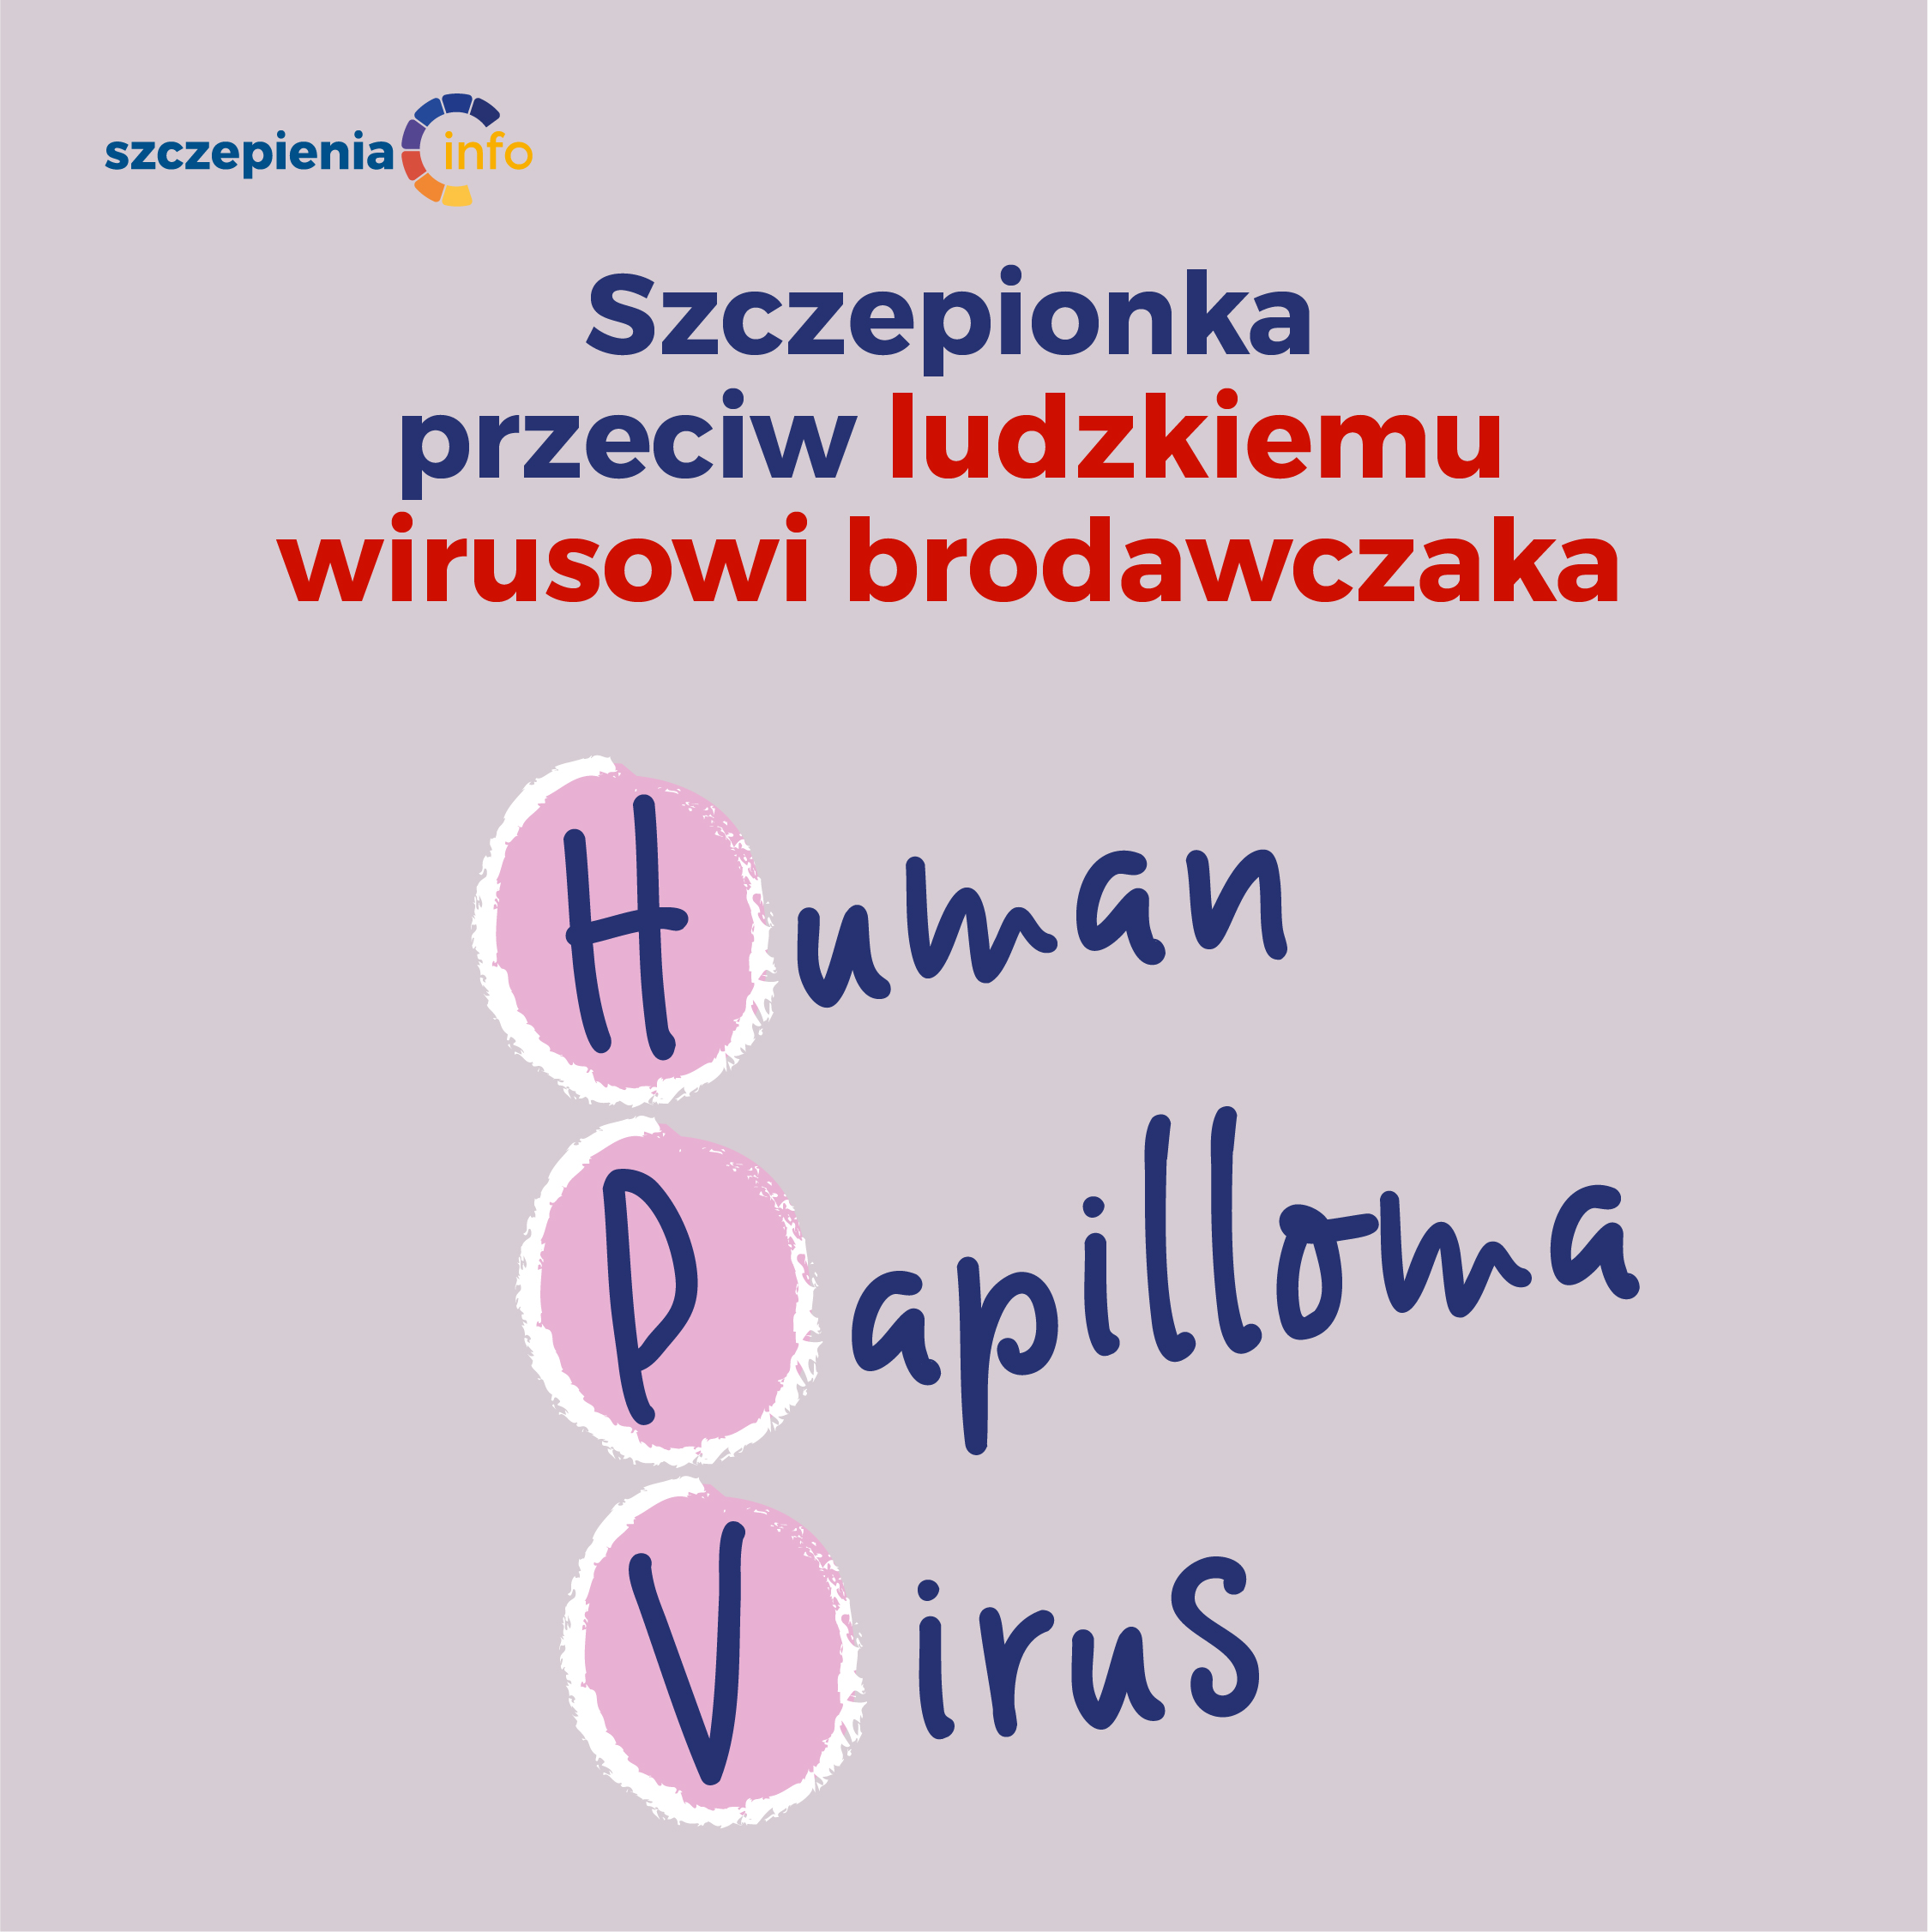 Oral human papillomavirus infection